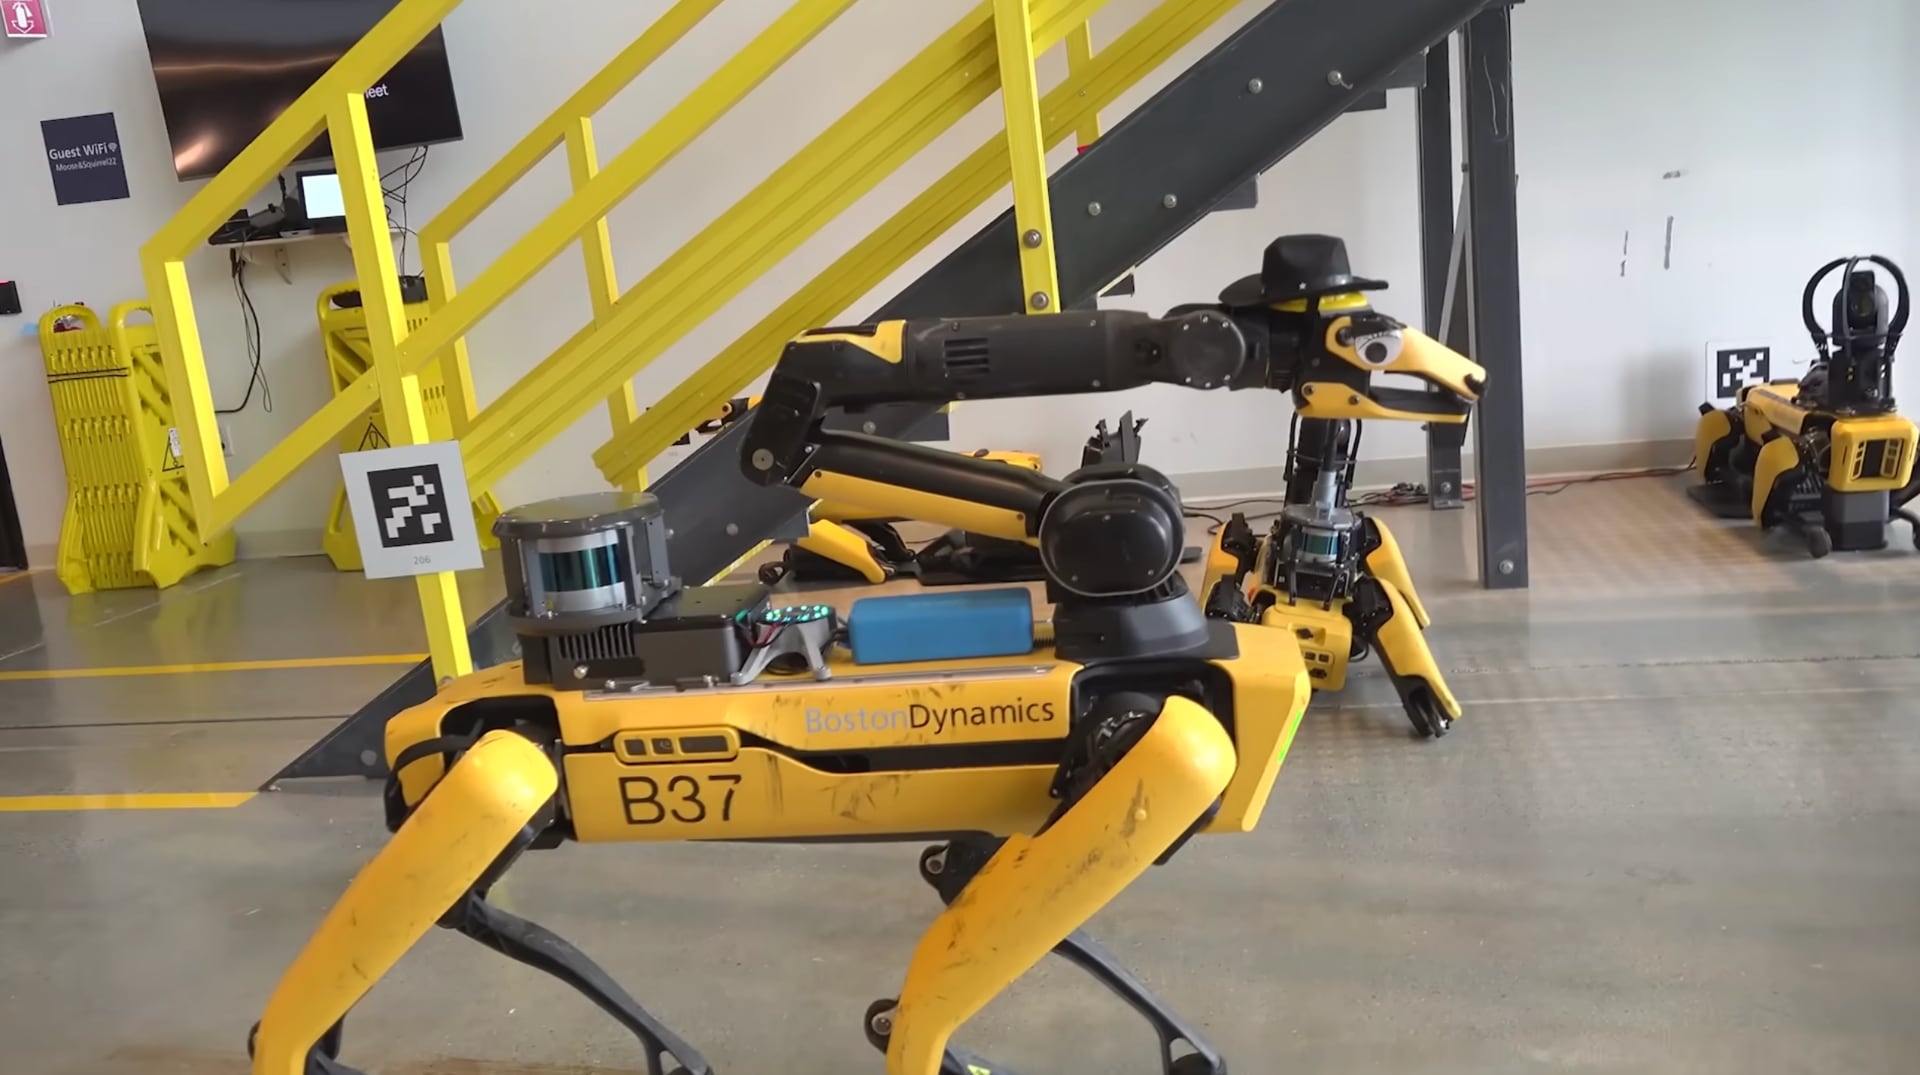 Boston Dynamics uczy robota Spot mówić (tak, za pomocą ChatGPT i innych modeli AI) - wideo